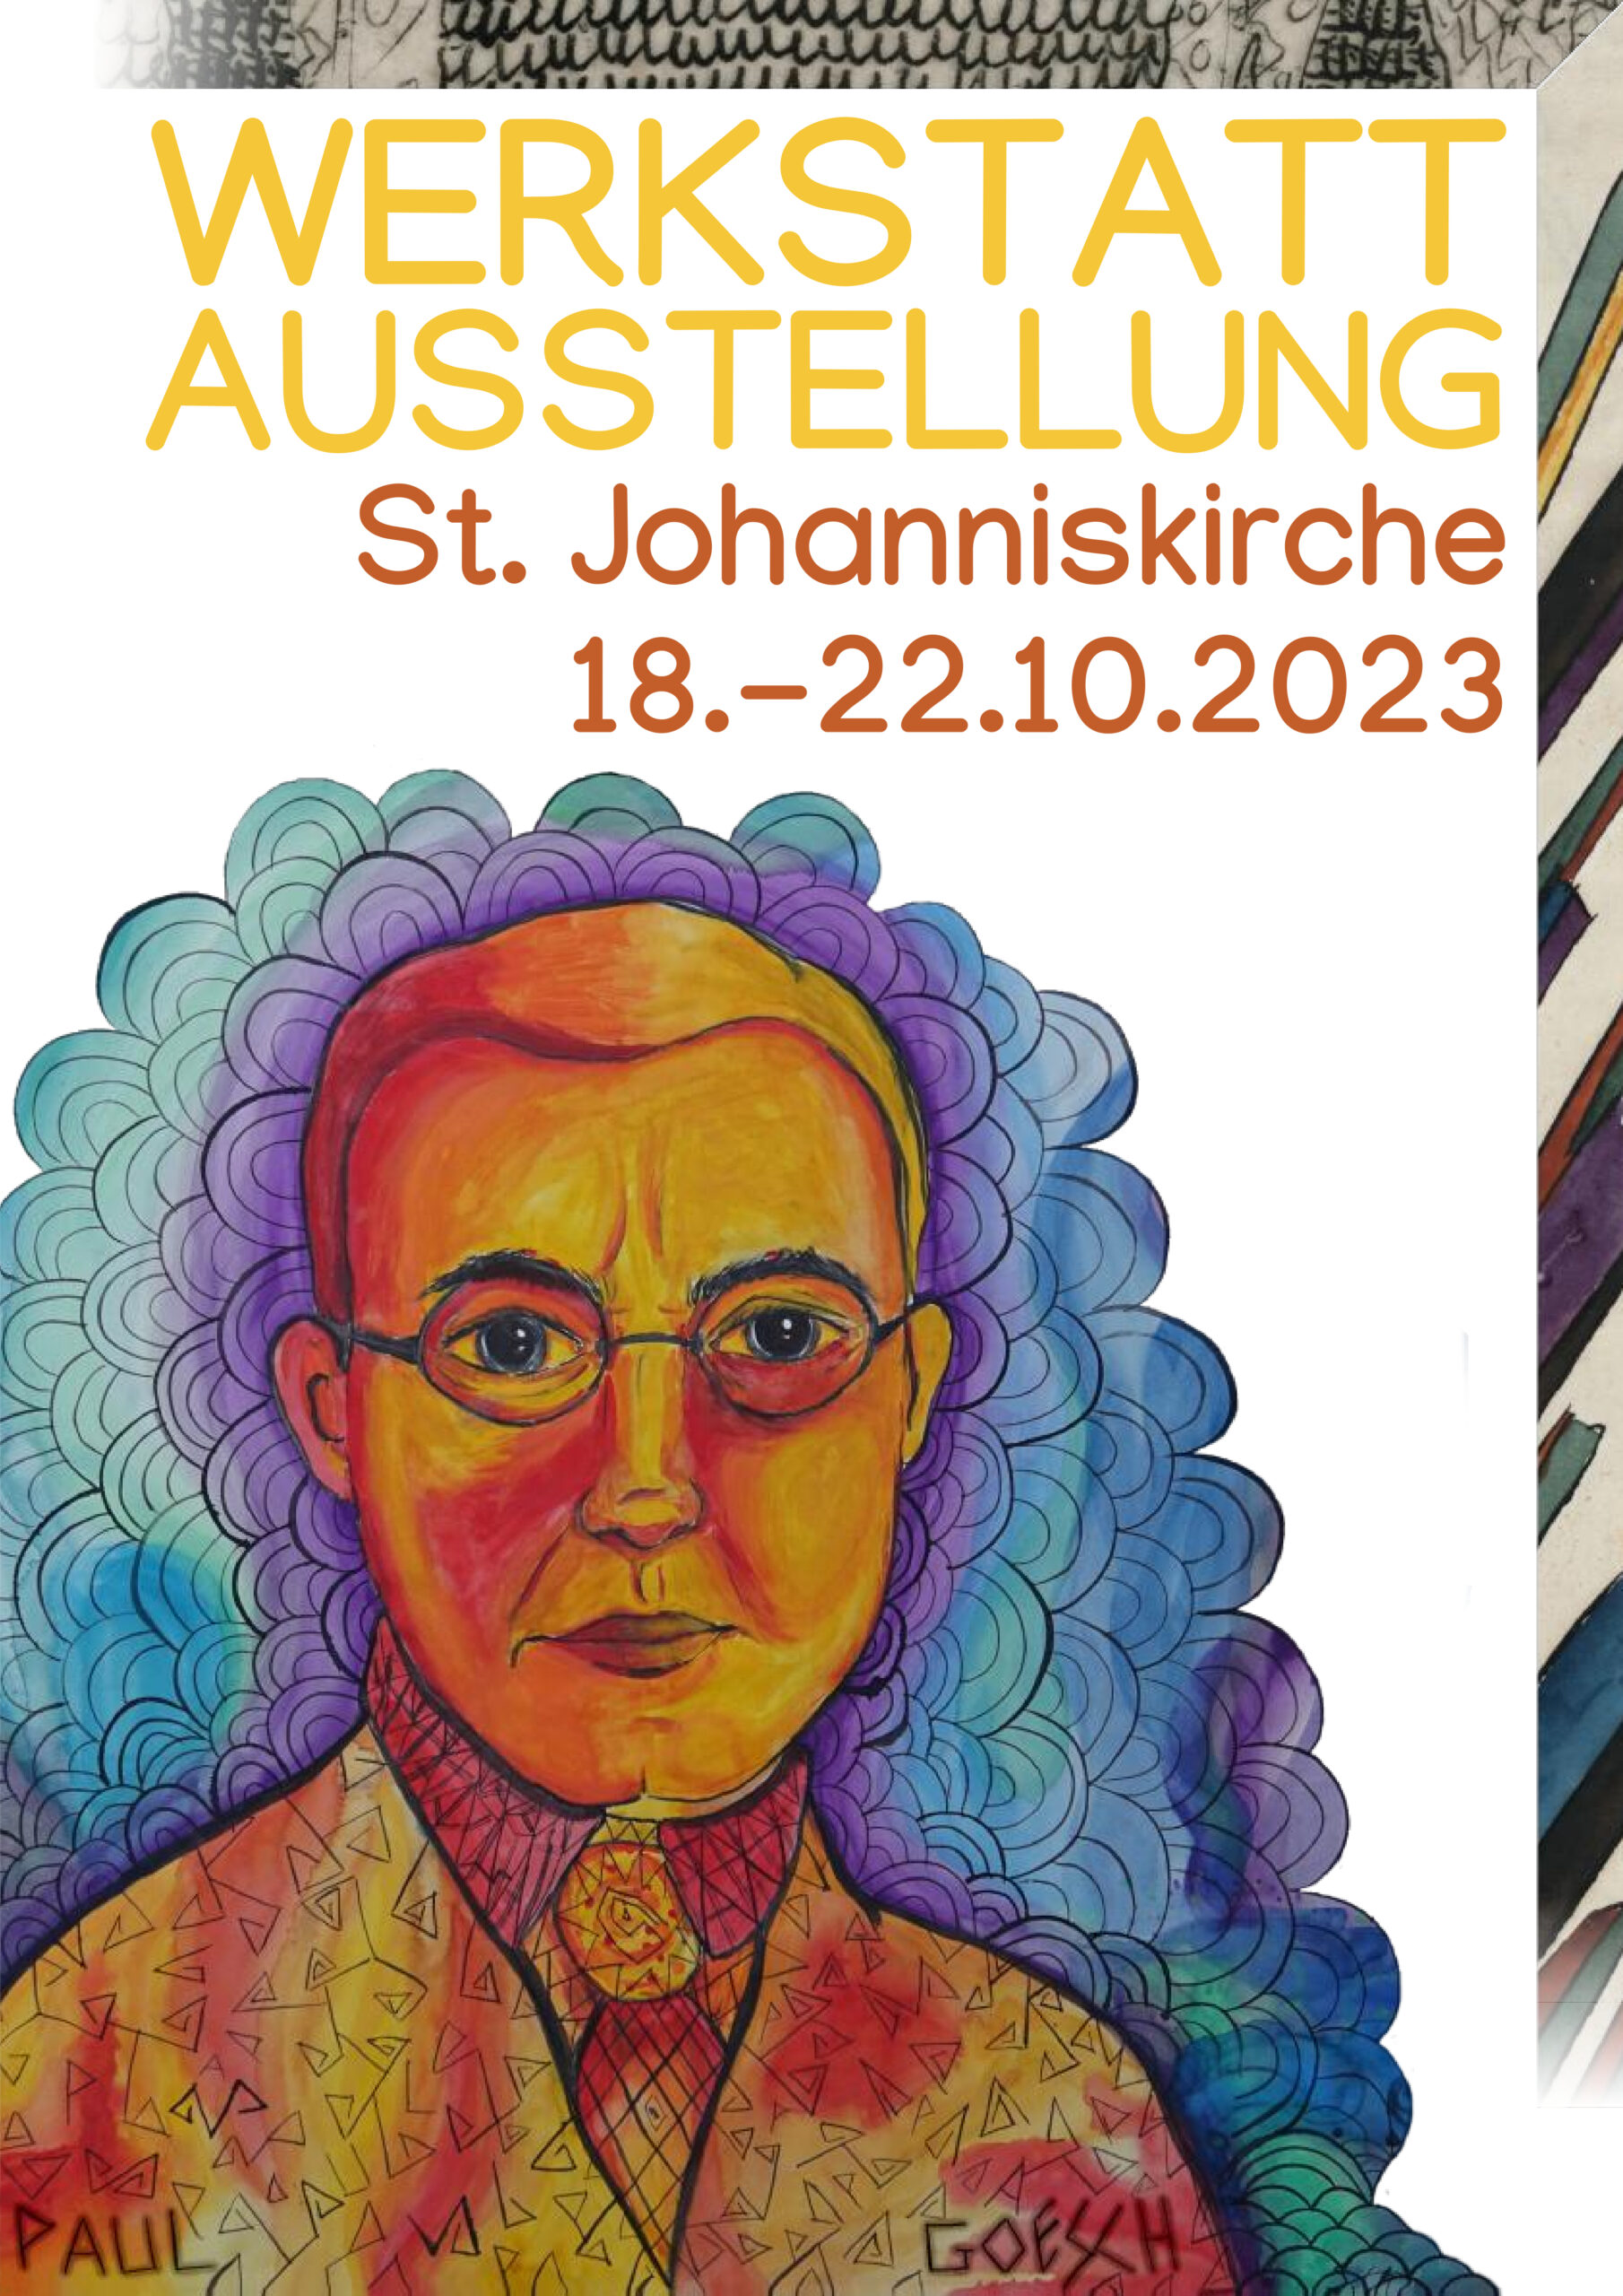 Ein gemaltes Porträt Paul Goeschs auf weißem Grund. Darüber der Text "Werkstattausstellung / St. Johanniskirche / 18.-22.10.2023"